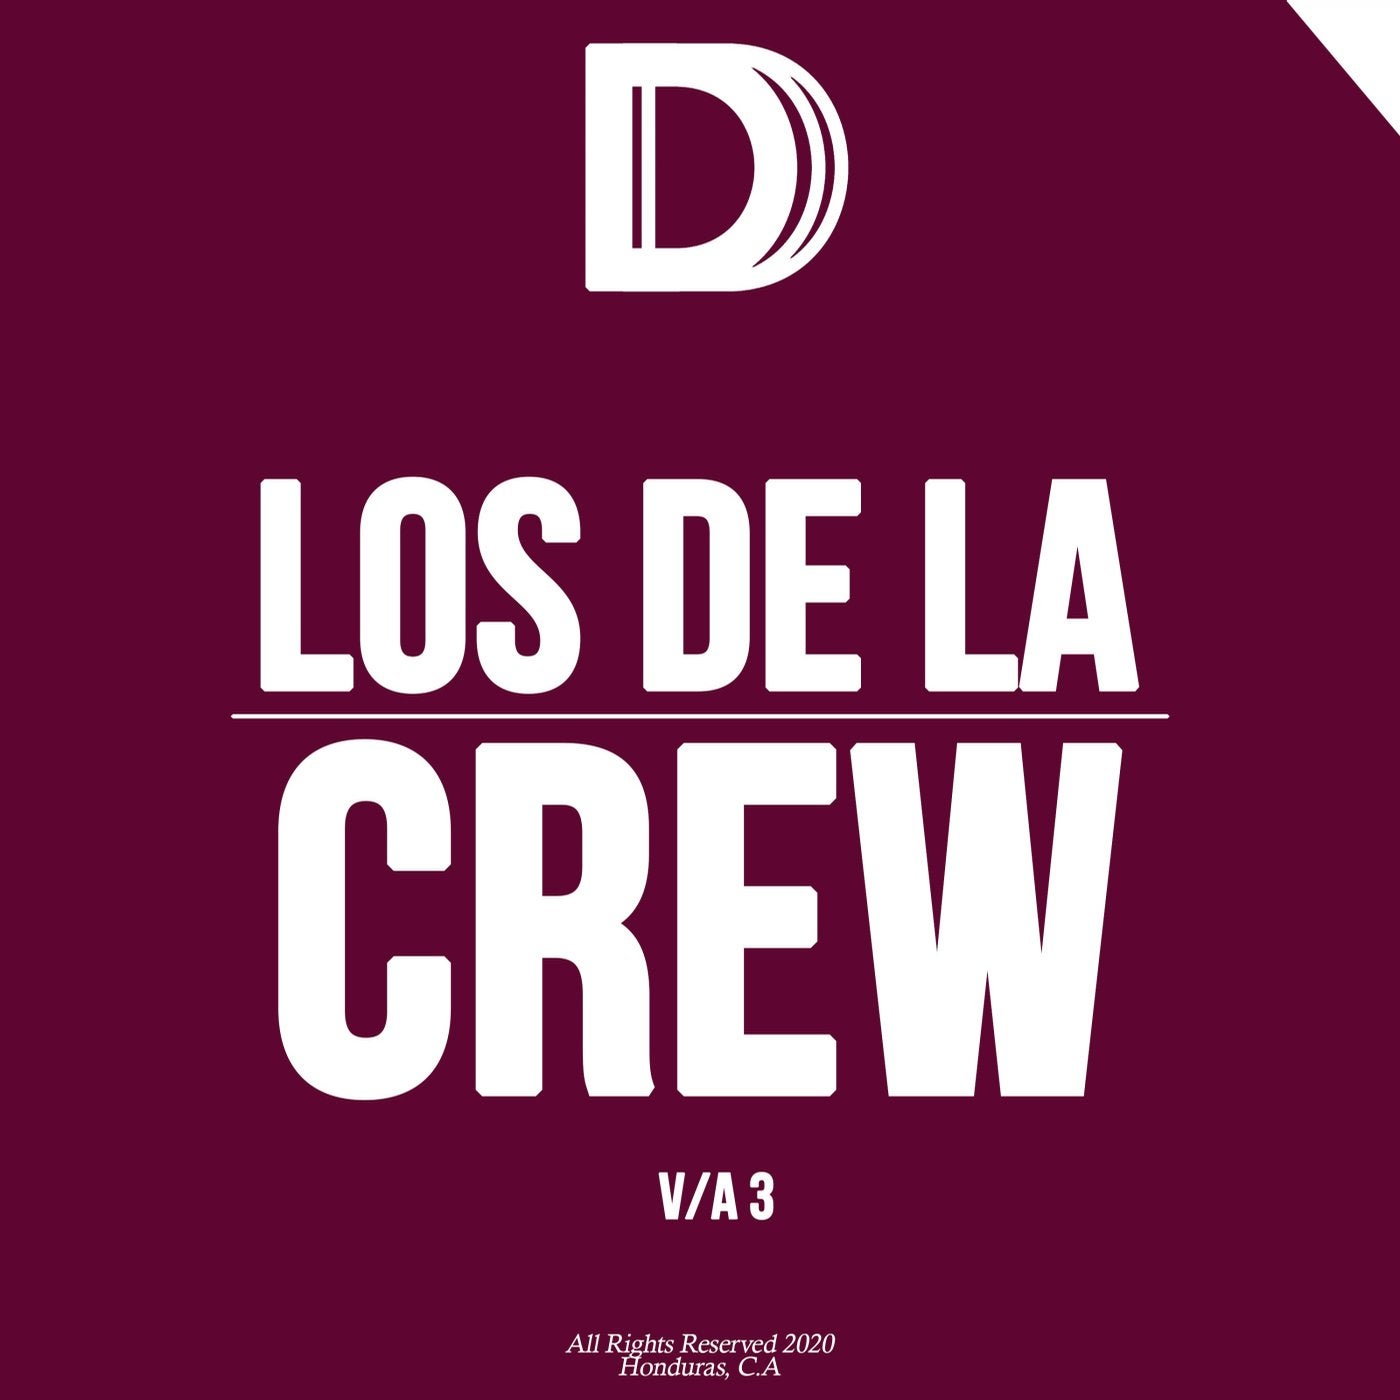 Los De La Crew 3